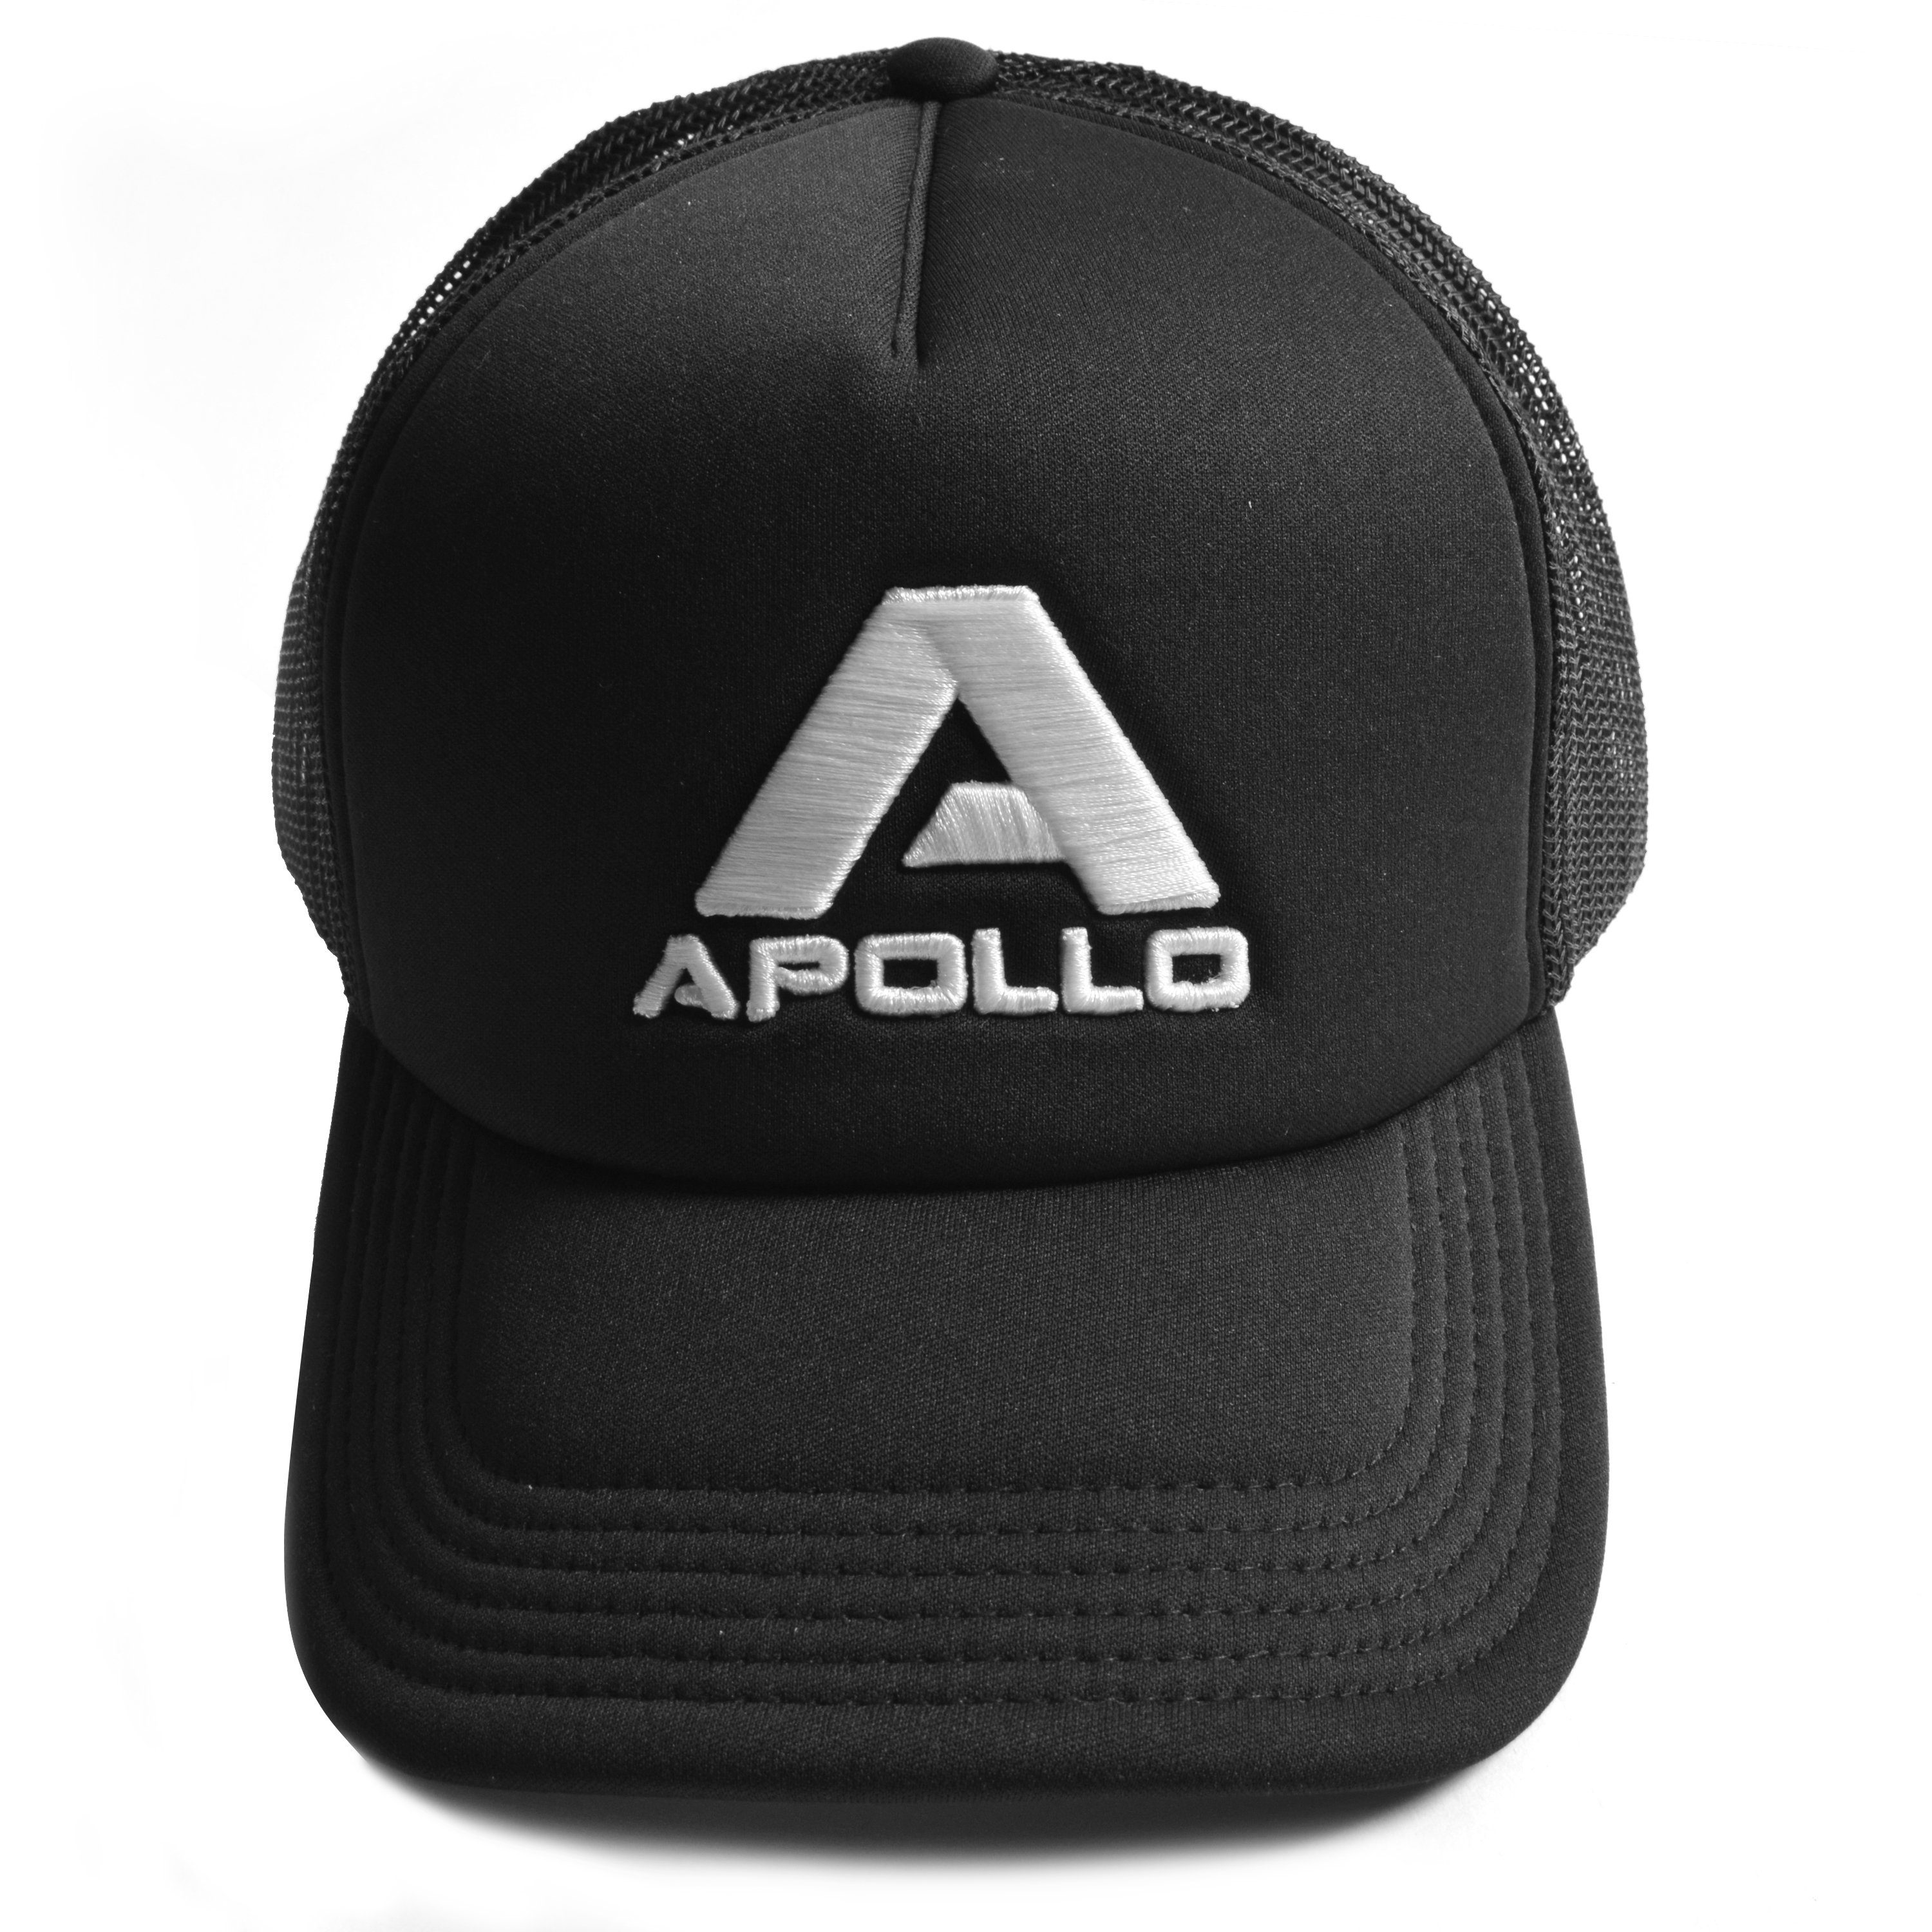 Apollo Erwachsene Cap größenverstellbar schicke Truckercap Kinder Trucker Basecap und für Netzkappe